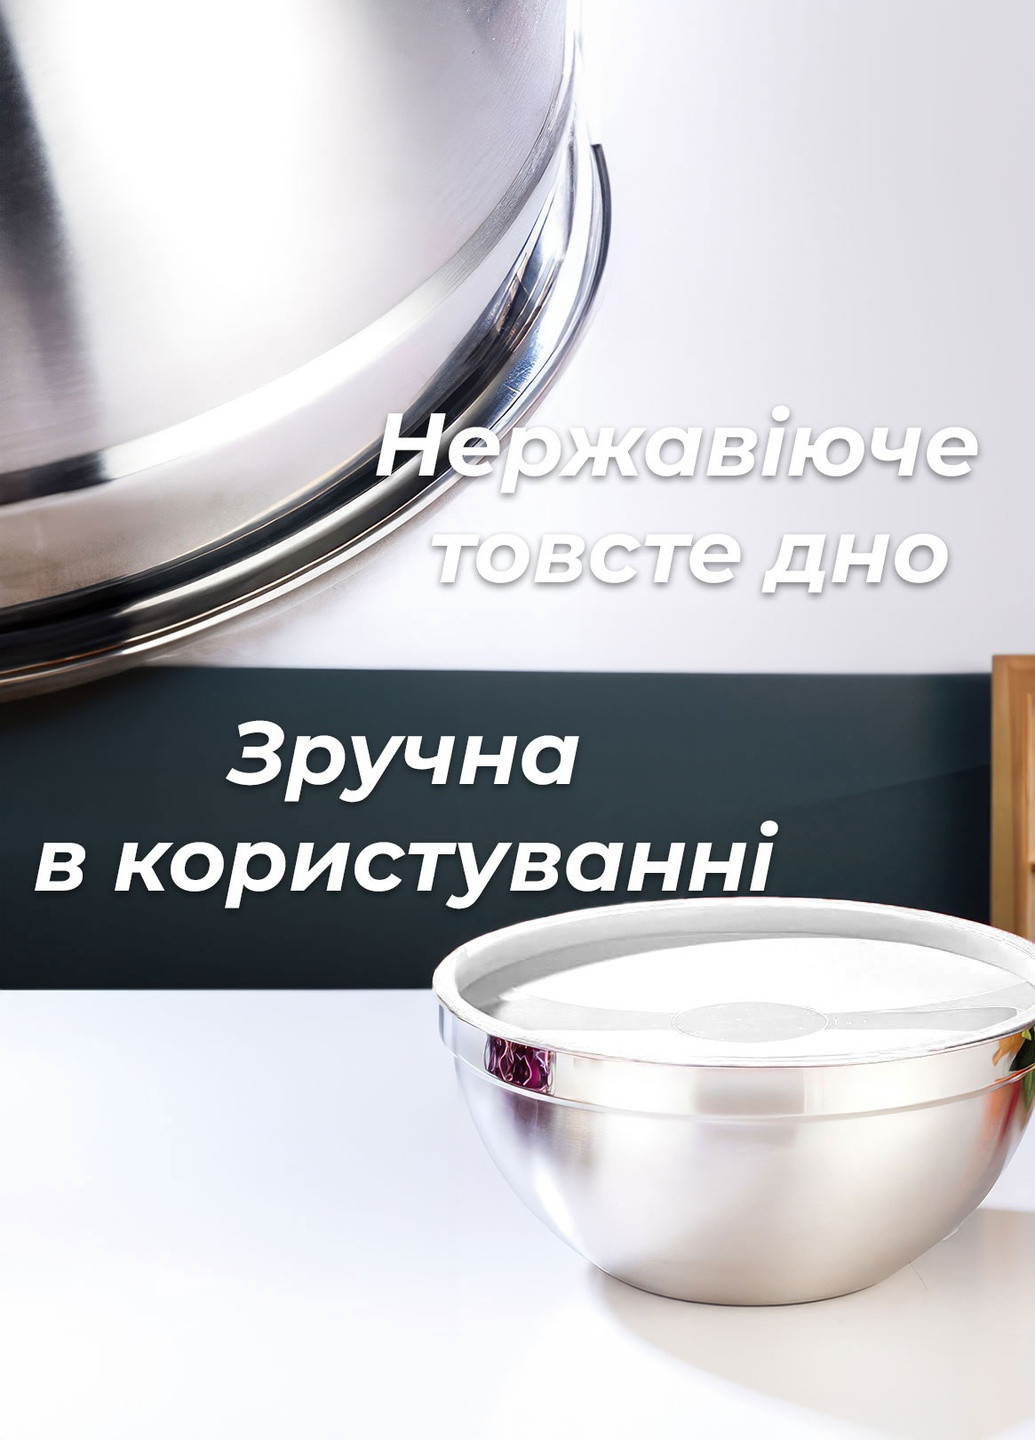 Набір металевих мисок 5 шт. 18-26см для кухні із силіконовою кришкою / глибока миска для змішування DobraMAMA (259499103)